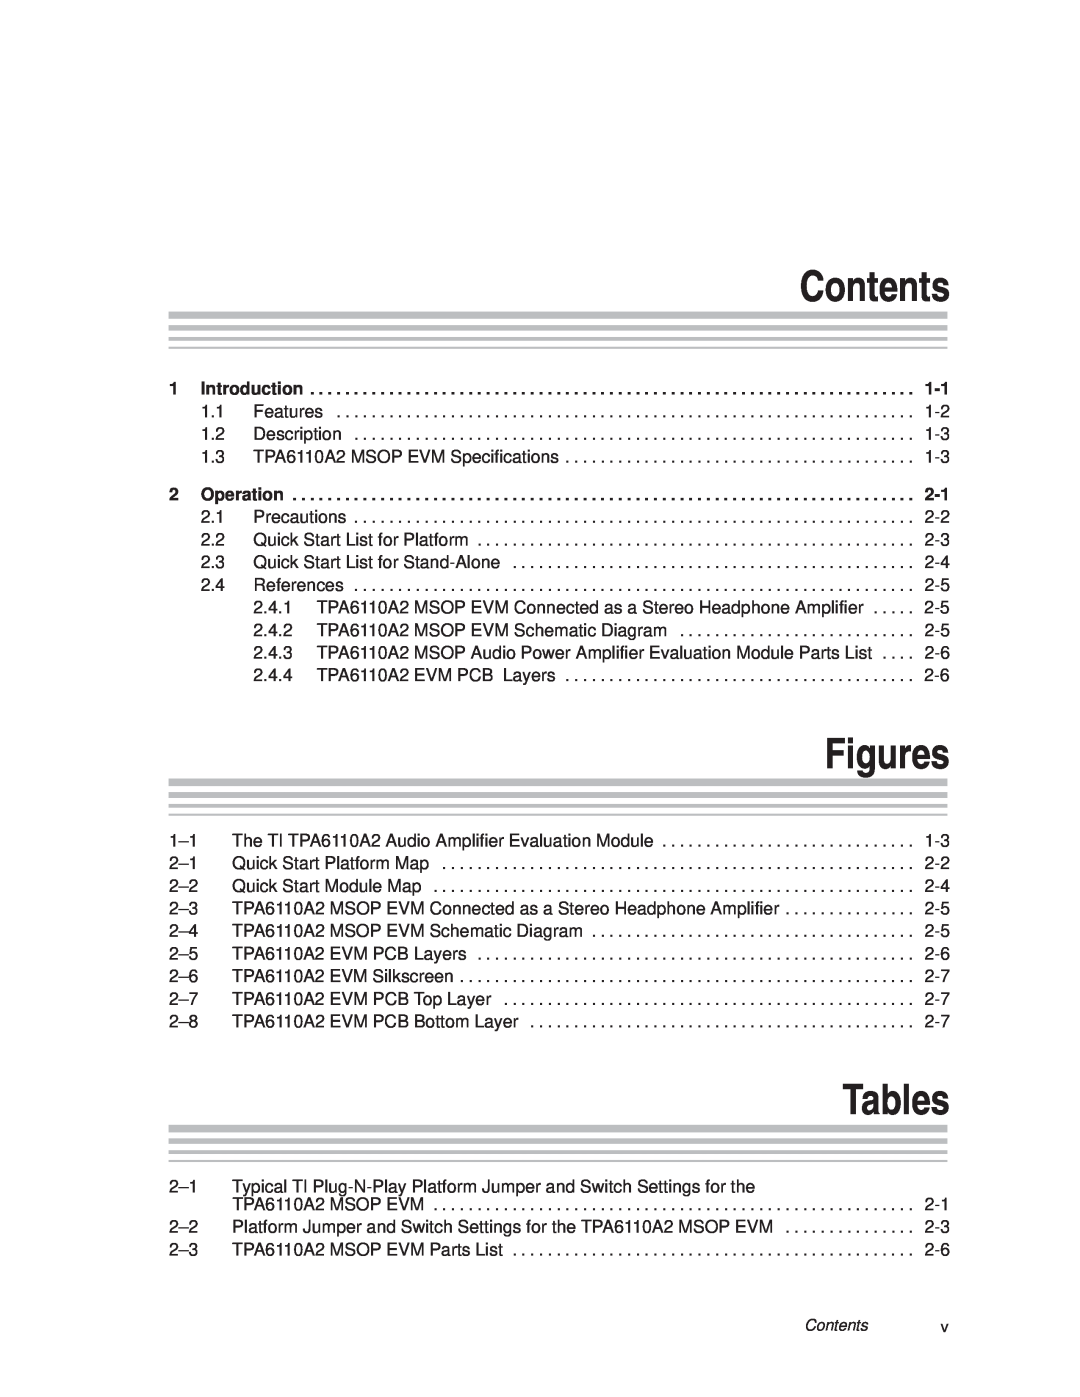 Texas Instruments TPA6110A2 MSOP manual Contents, Tables, Figures 